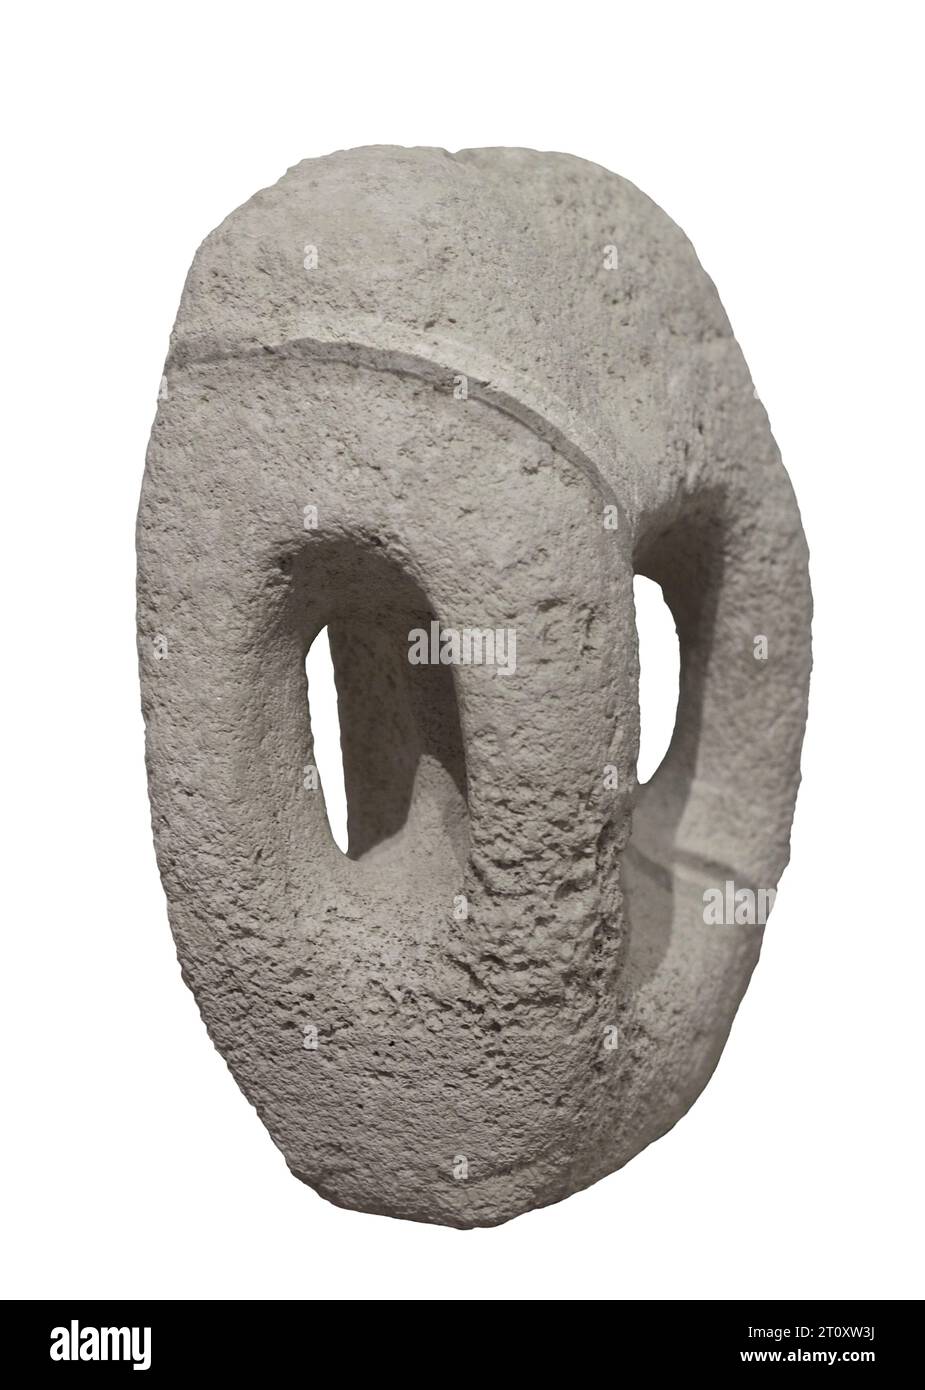 Templi megalitici di Malta (5000 a.C. - 2800 a.C.). Uno dei supporti in pietra utilizzati per la sua costruzione. Museo Nazionale di Archeologia. La Valletta. Malta. Foto Stock